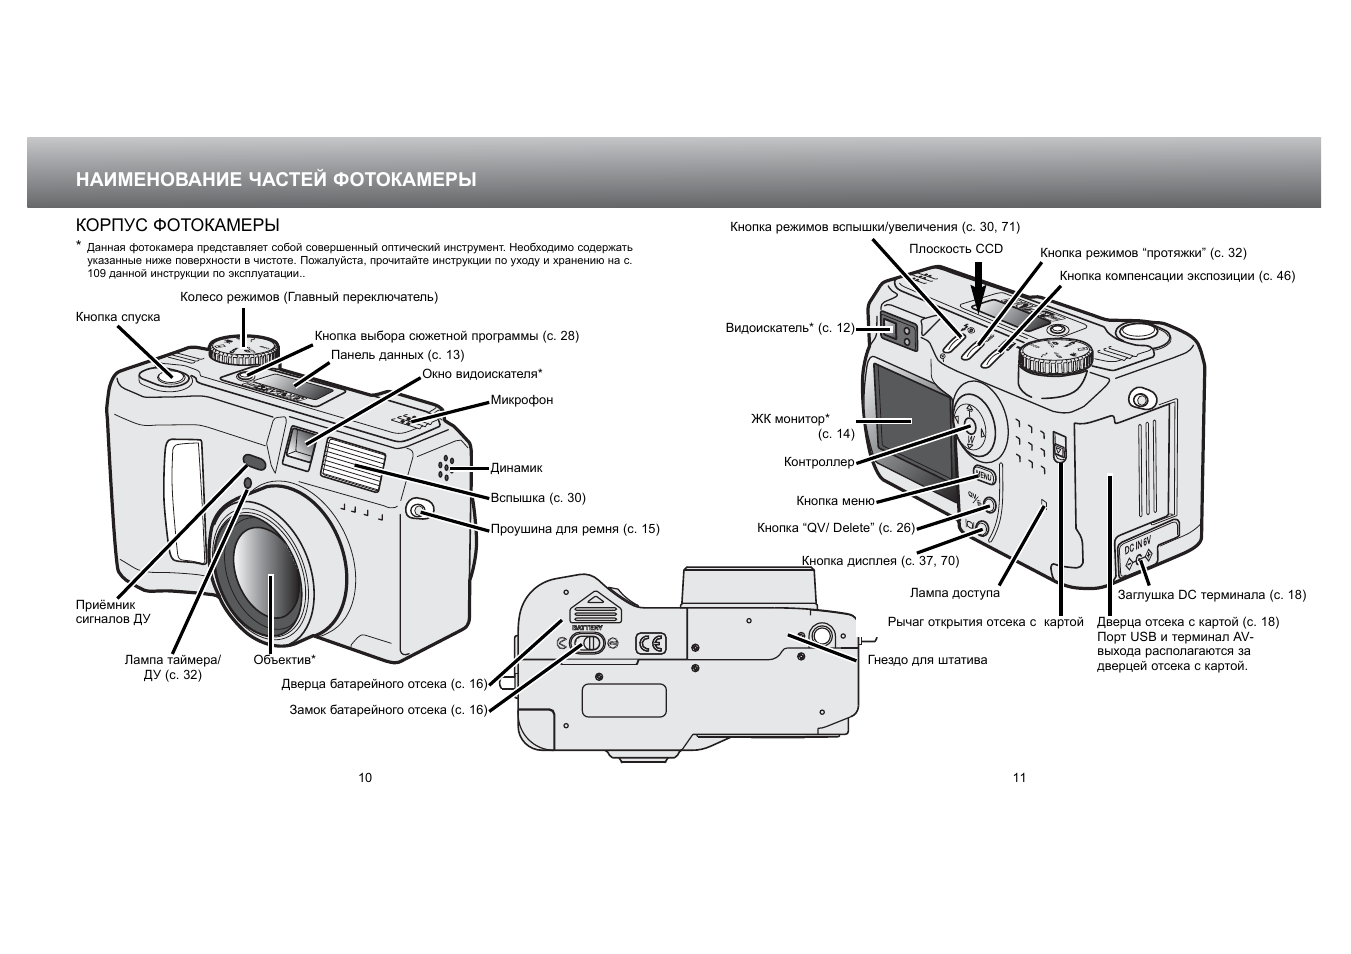 Схема фотоаппарата Никон д5300